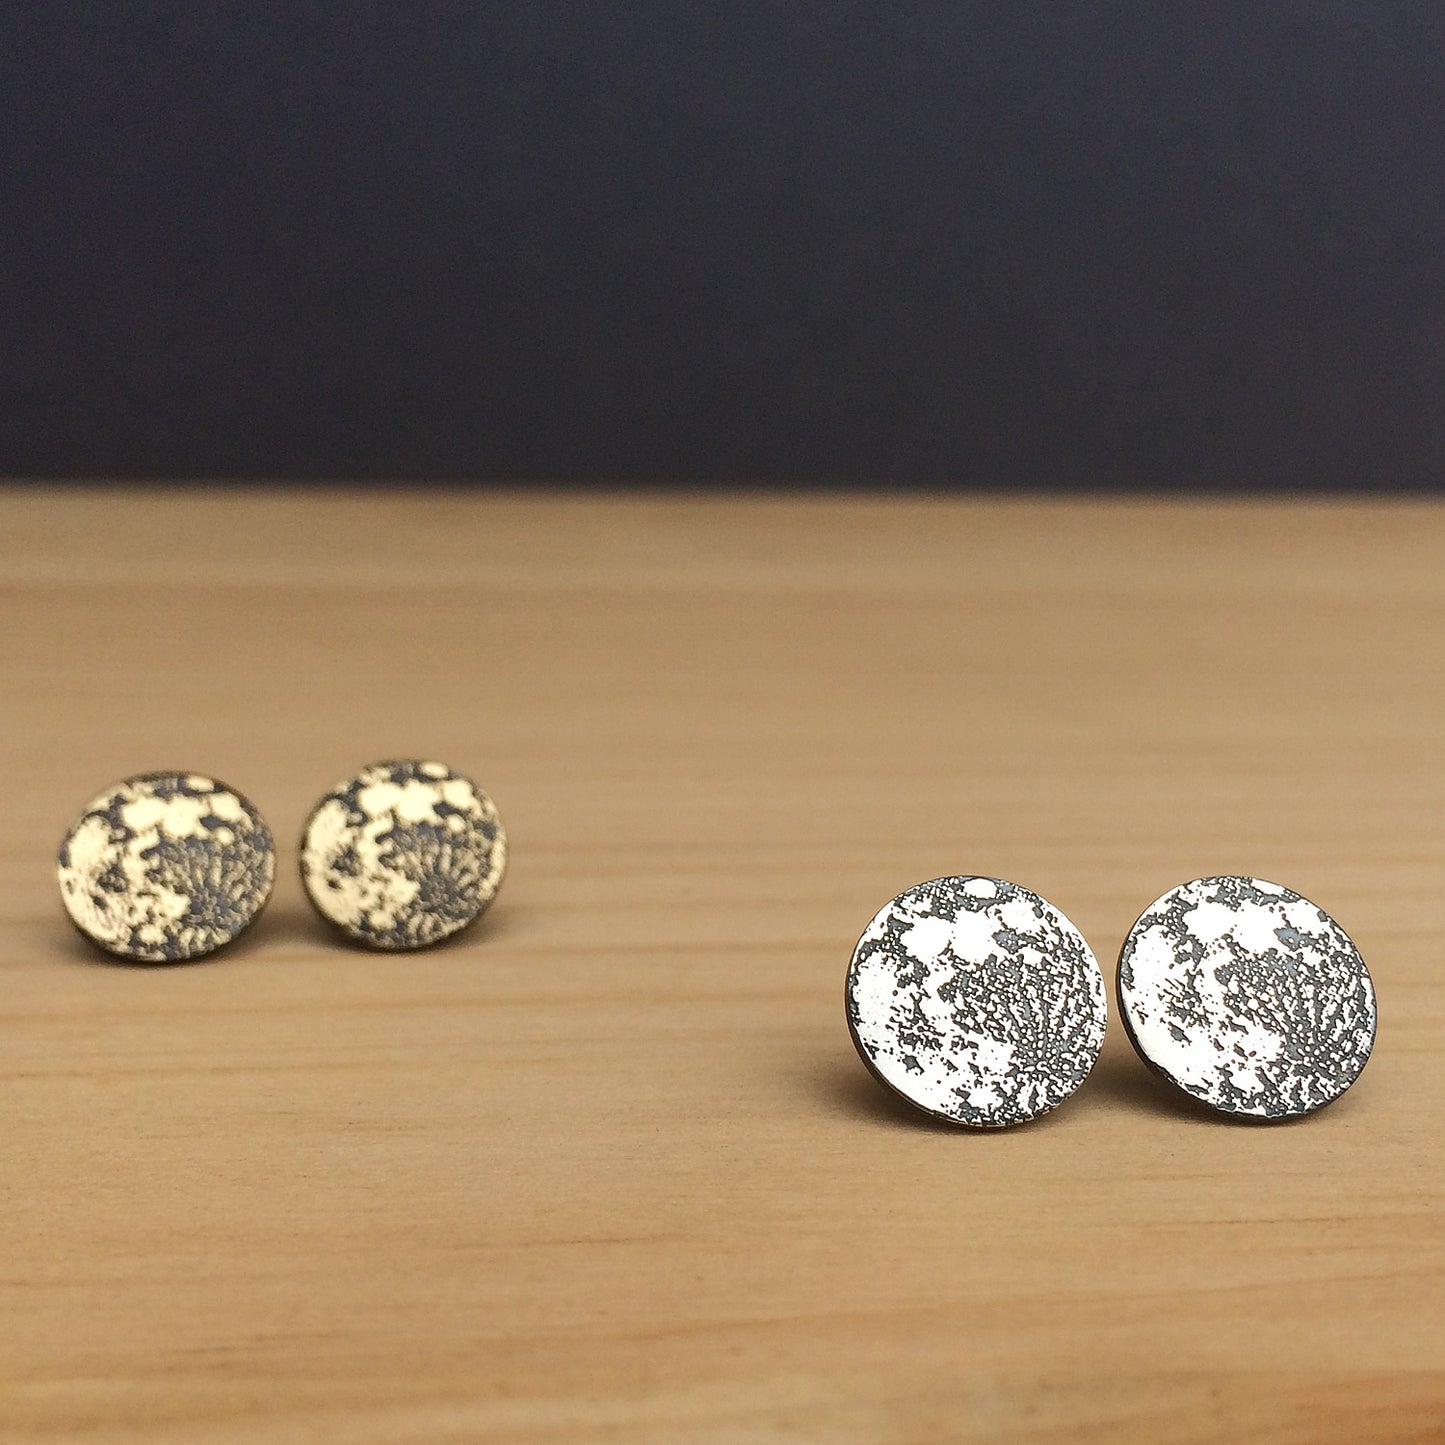 full moon earrings in sterling silver or brass